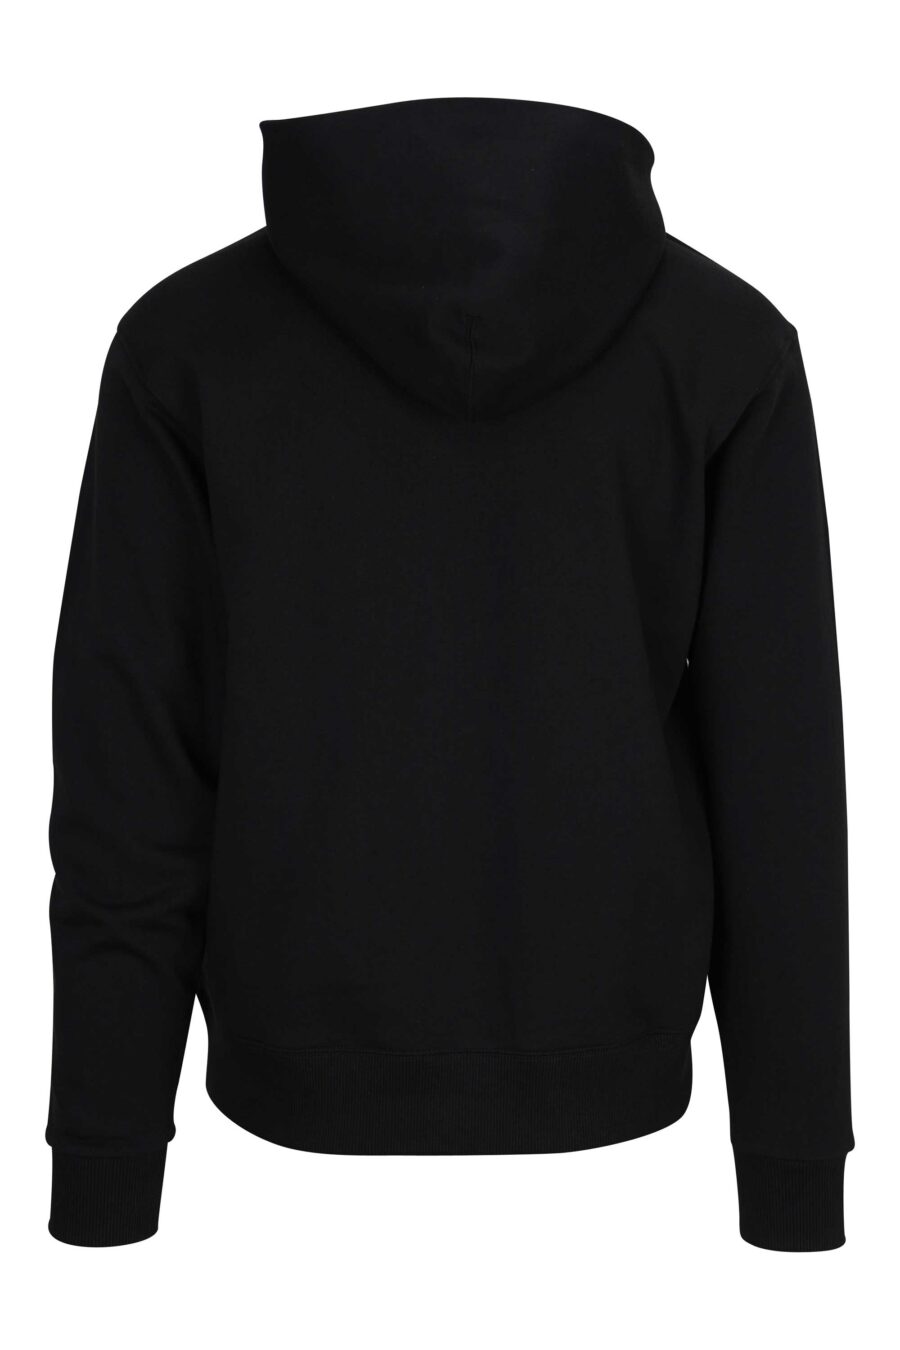 Black hooded sweatshirt with mini logo "boke flower" - 3612230469198 1